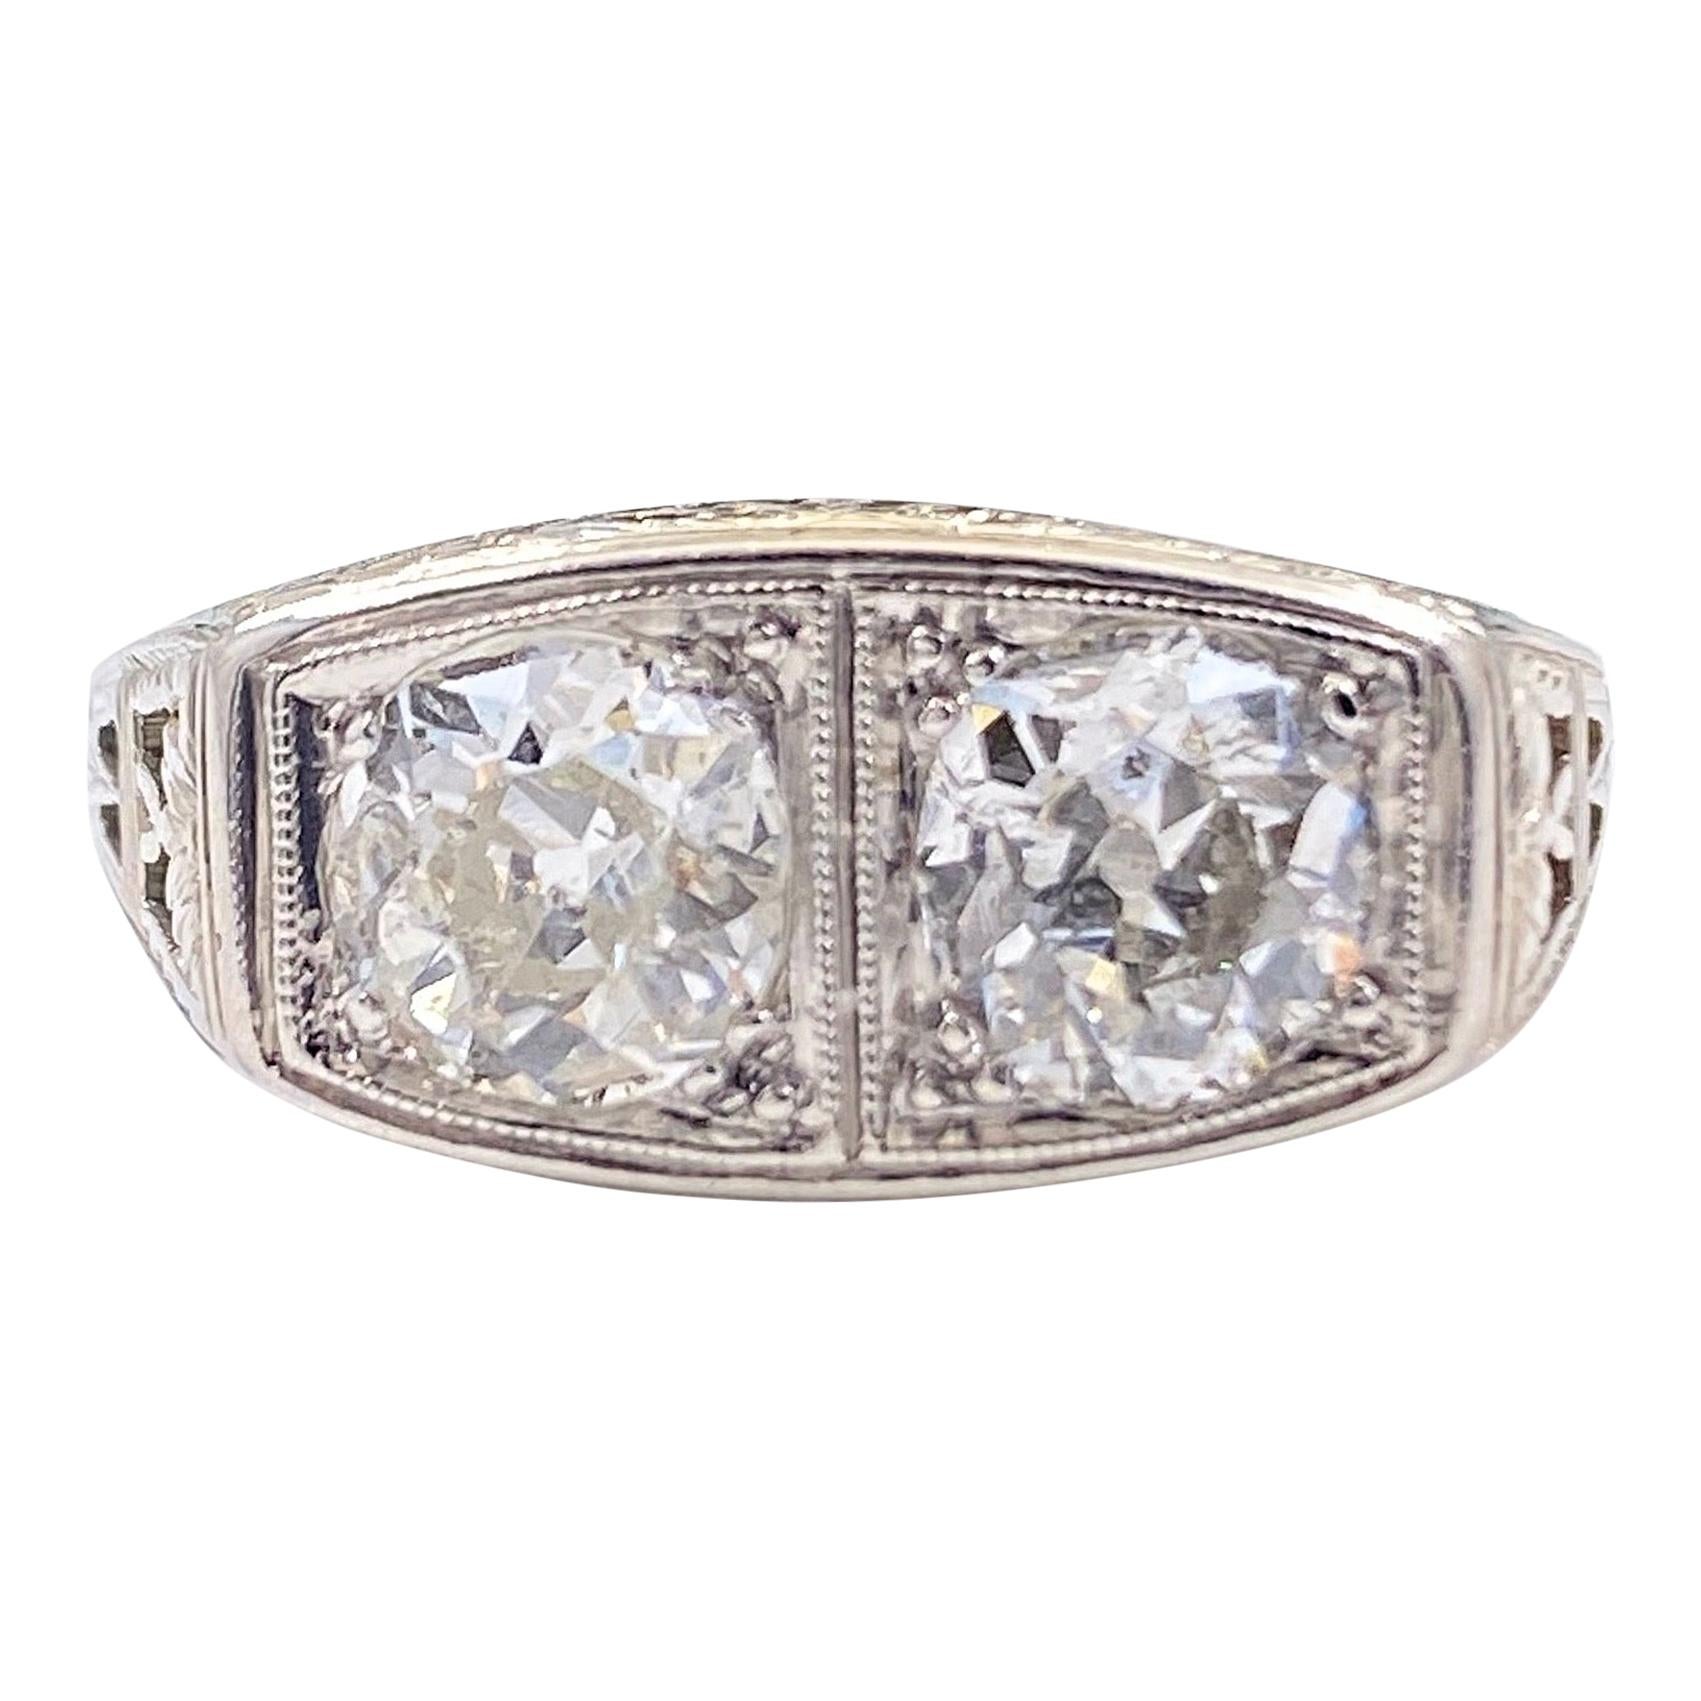 Antique Art Nouveau Diamond Ring 1.25 Carat Old Mine Cut 18 Karat White Gold